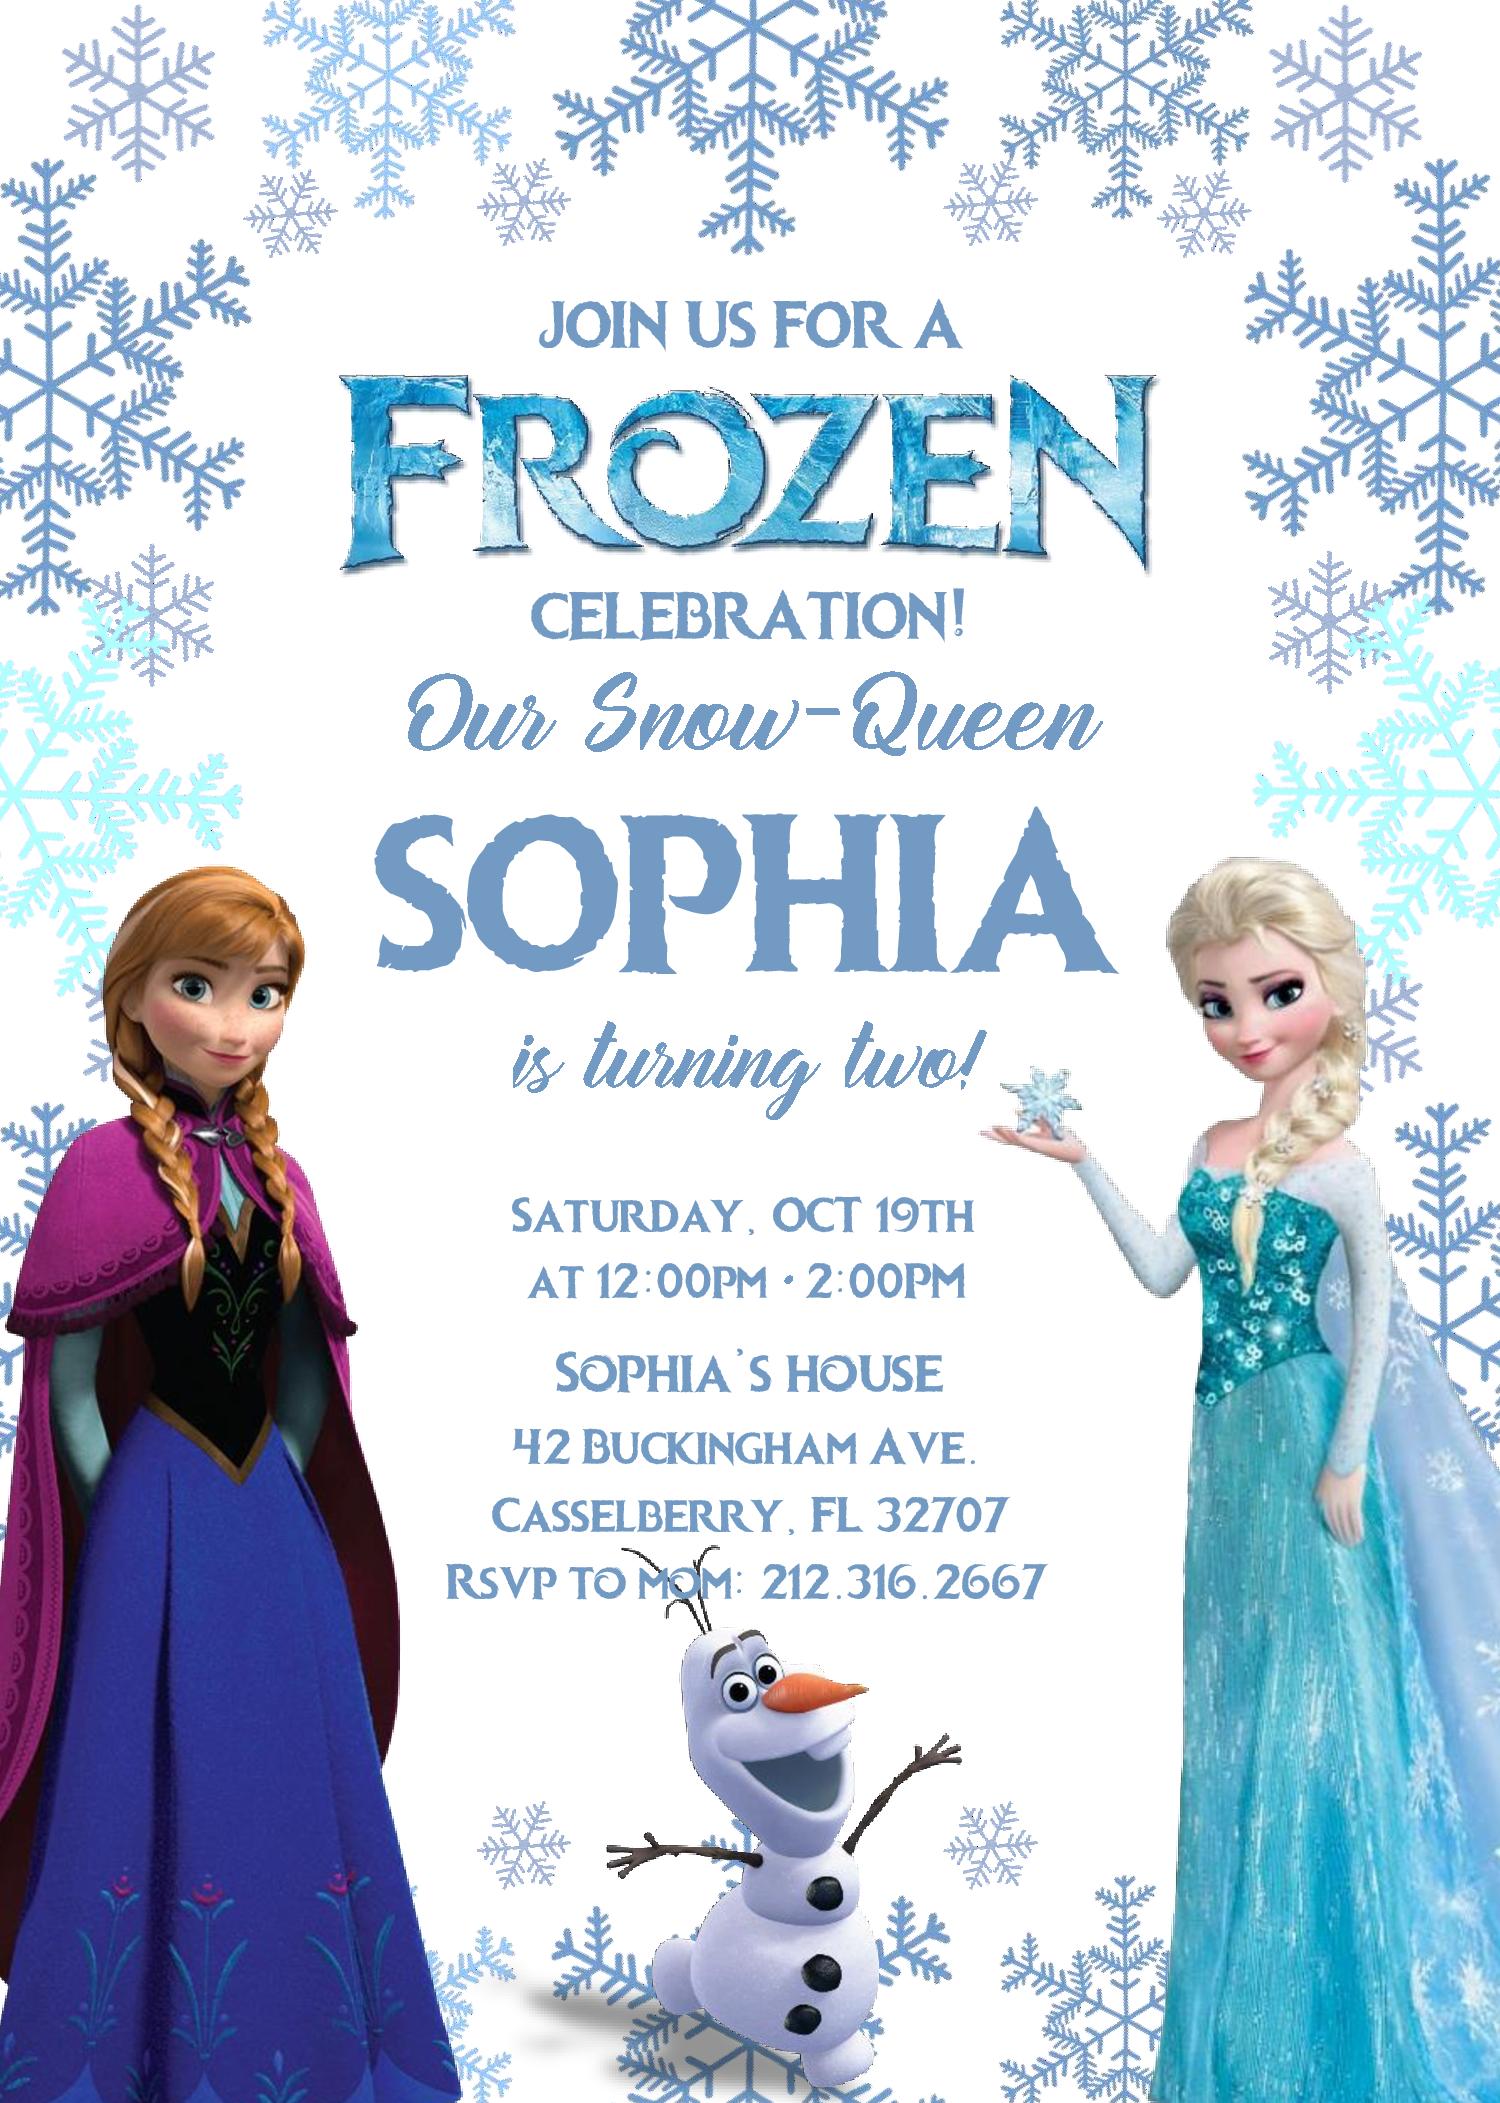 Frozen 2 Invitation Template Free